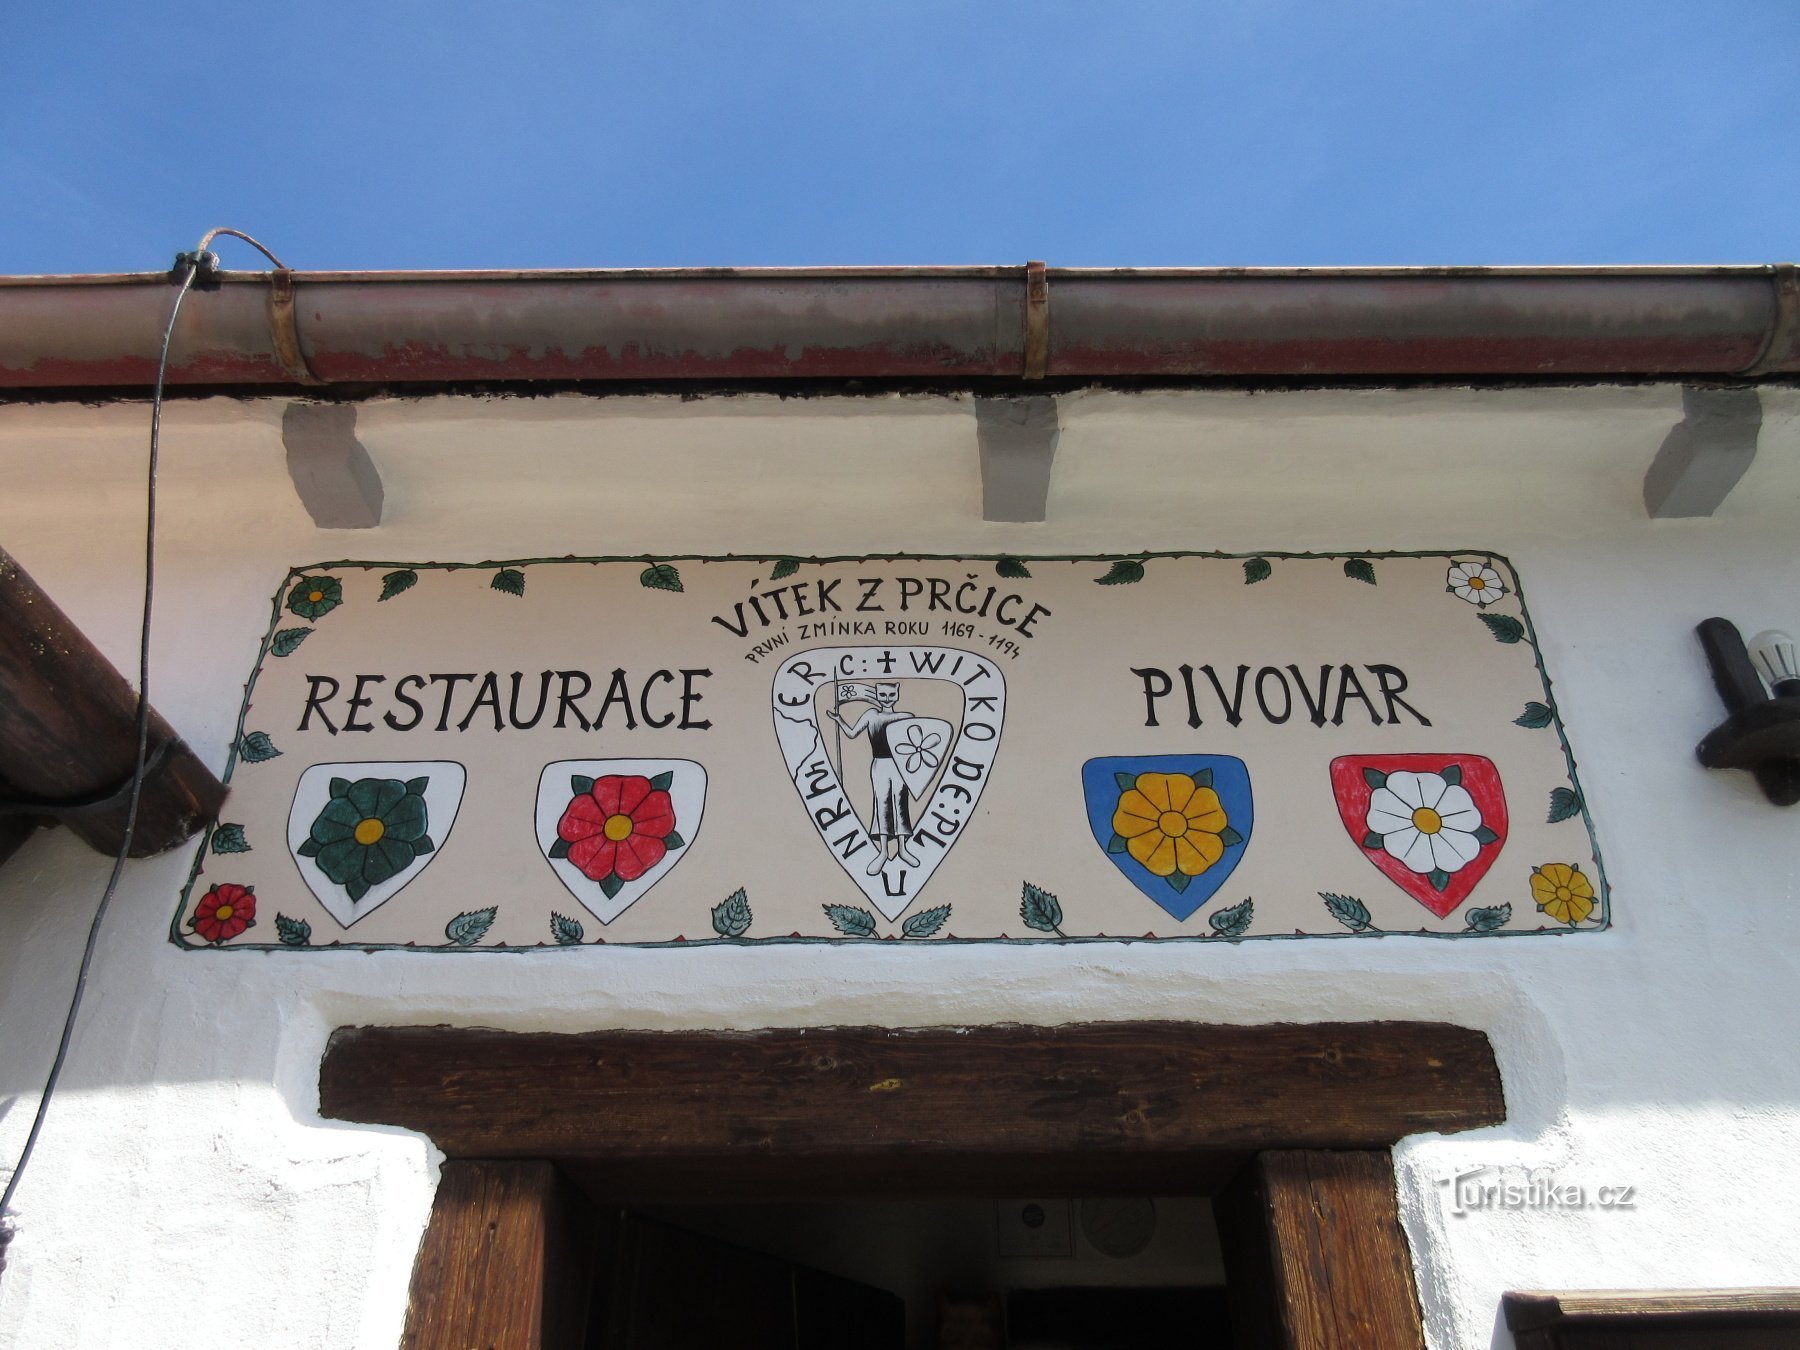 Седлець-Прчіце - історія, замок, пивоварня Vítek z Prčice, а також марш Прага-Прчице